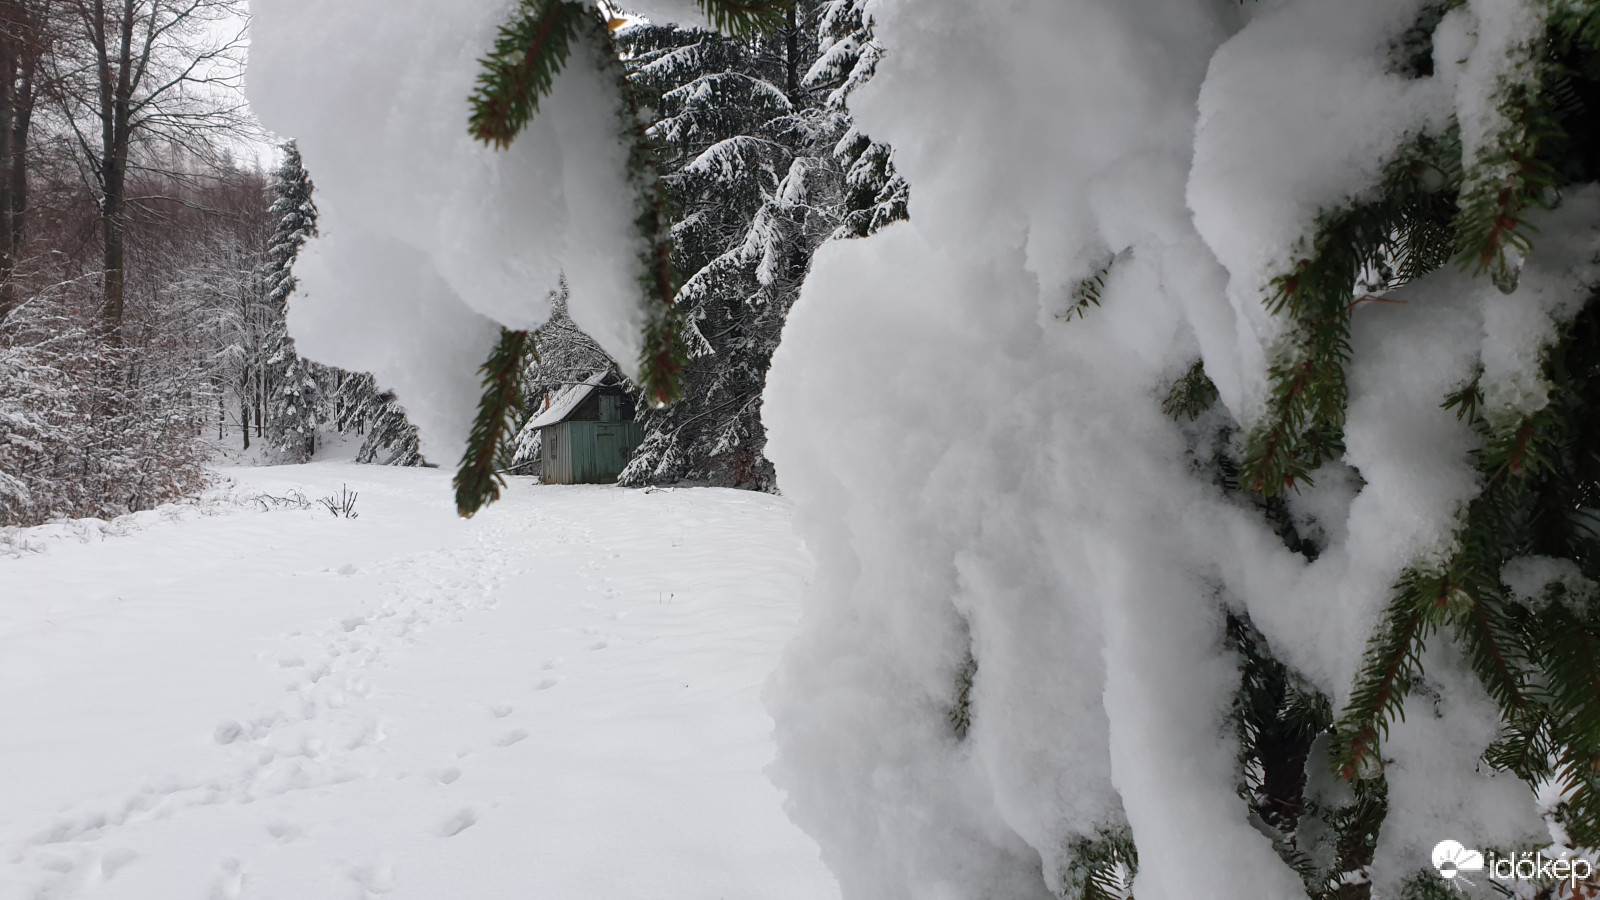 Kőszegi hegység 2020.12.10. Hóvastagság 20 cm